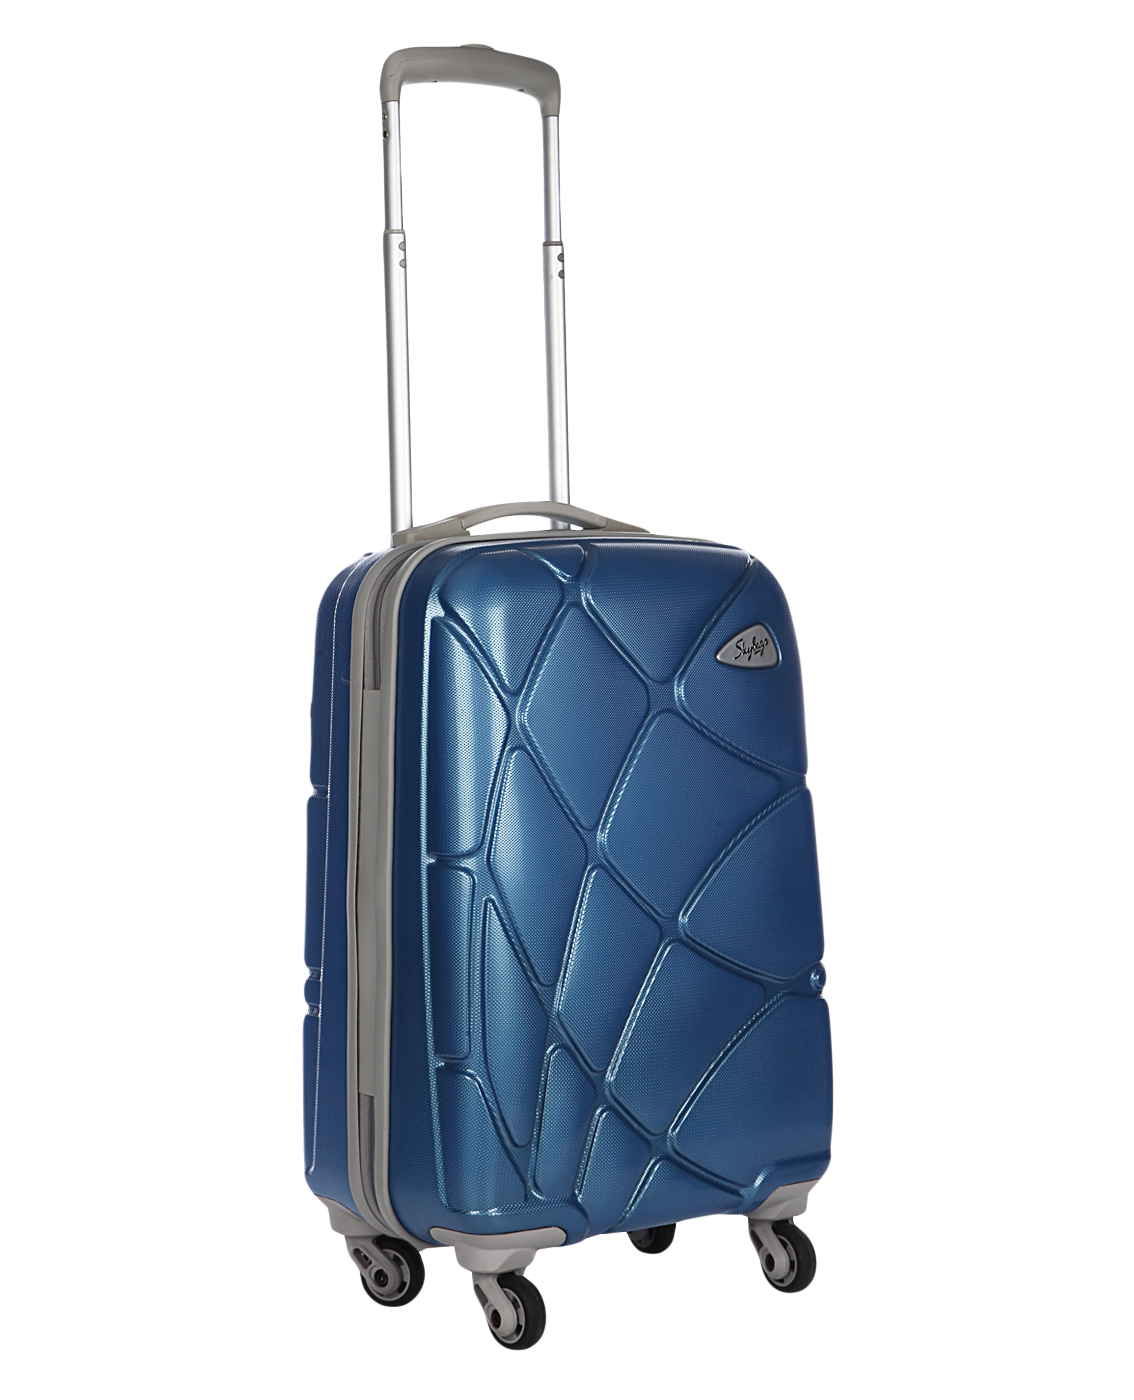 Suitcase PNG-PlusPNG.com-691